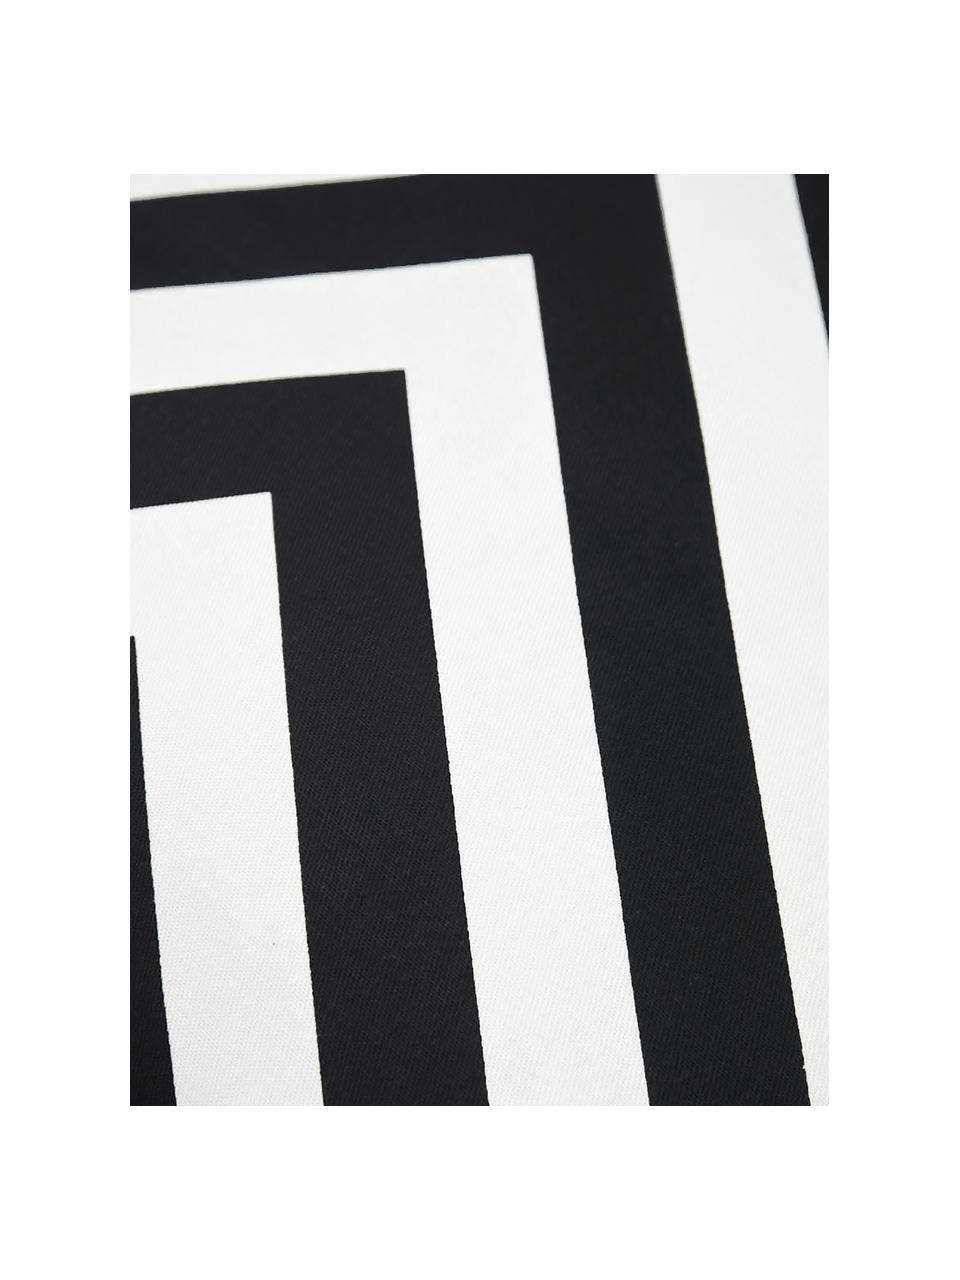 Kussenhoes Lena met zigzag patroon in zwart/wit, 100% katoen, panamabinding, Zwart, crèmekleurig, 40 x 40 cm